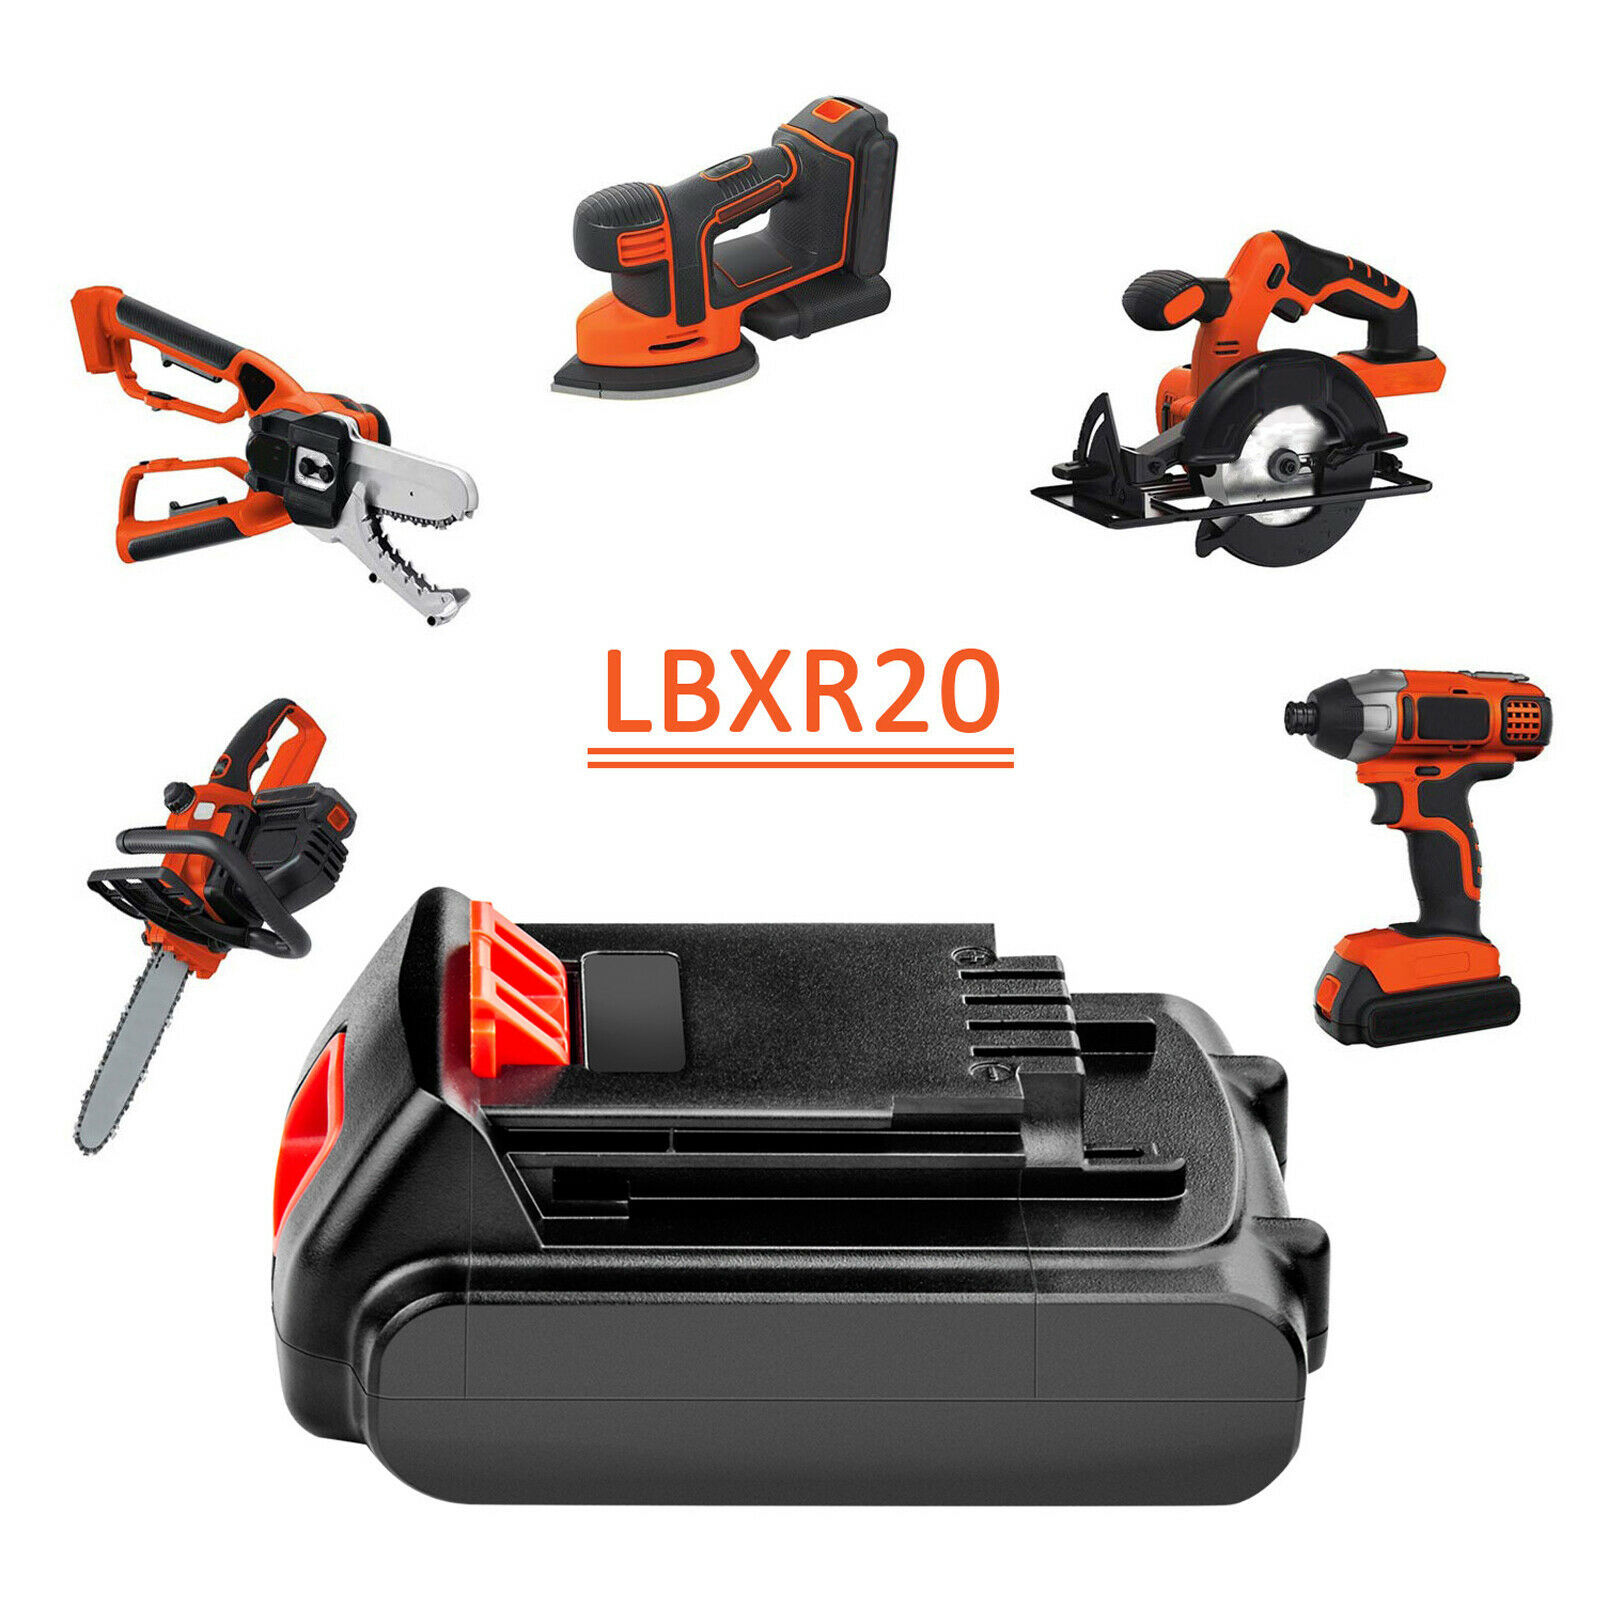 LBXR20 drill battery